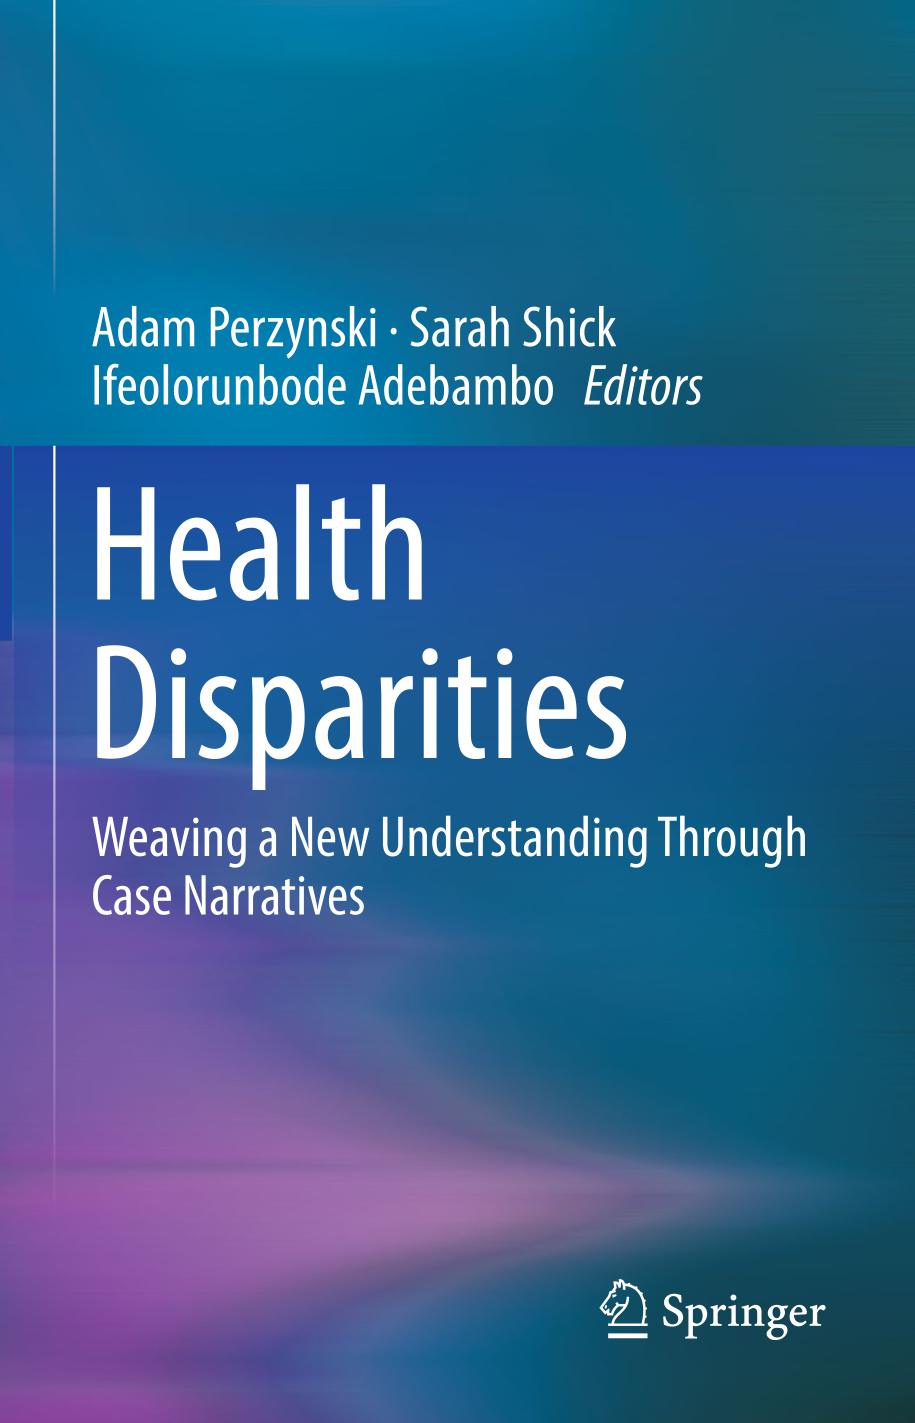 Health disparities : weaving a new understanding through case narratives